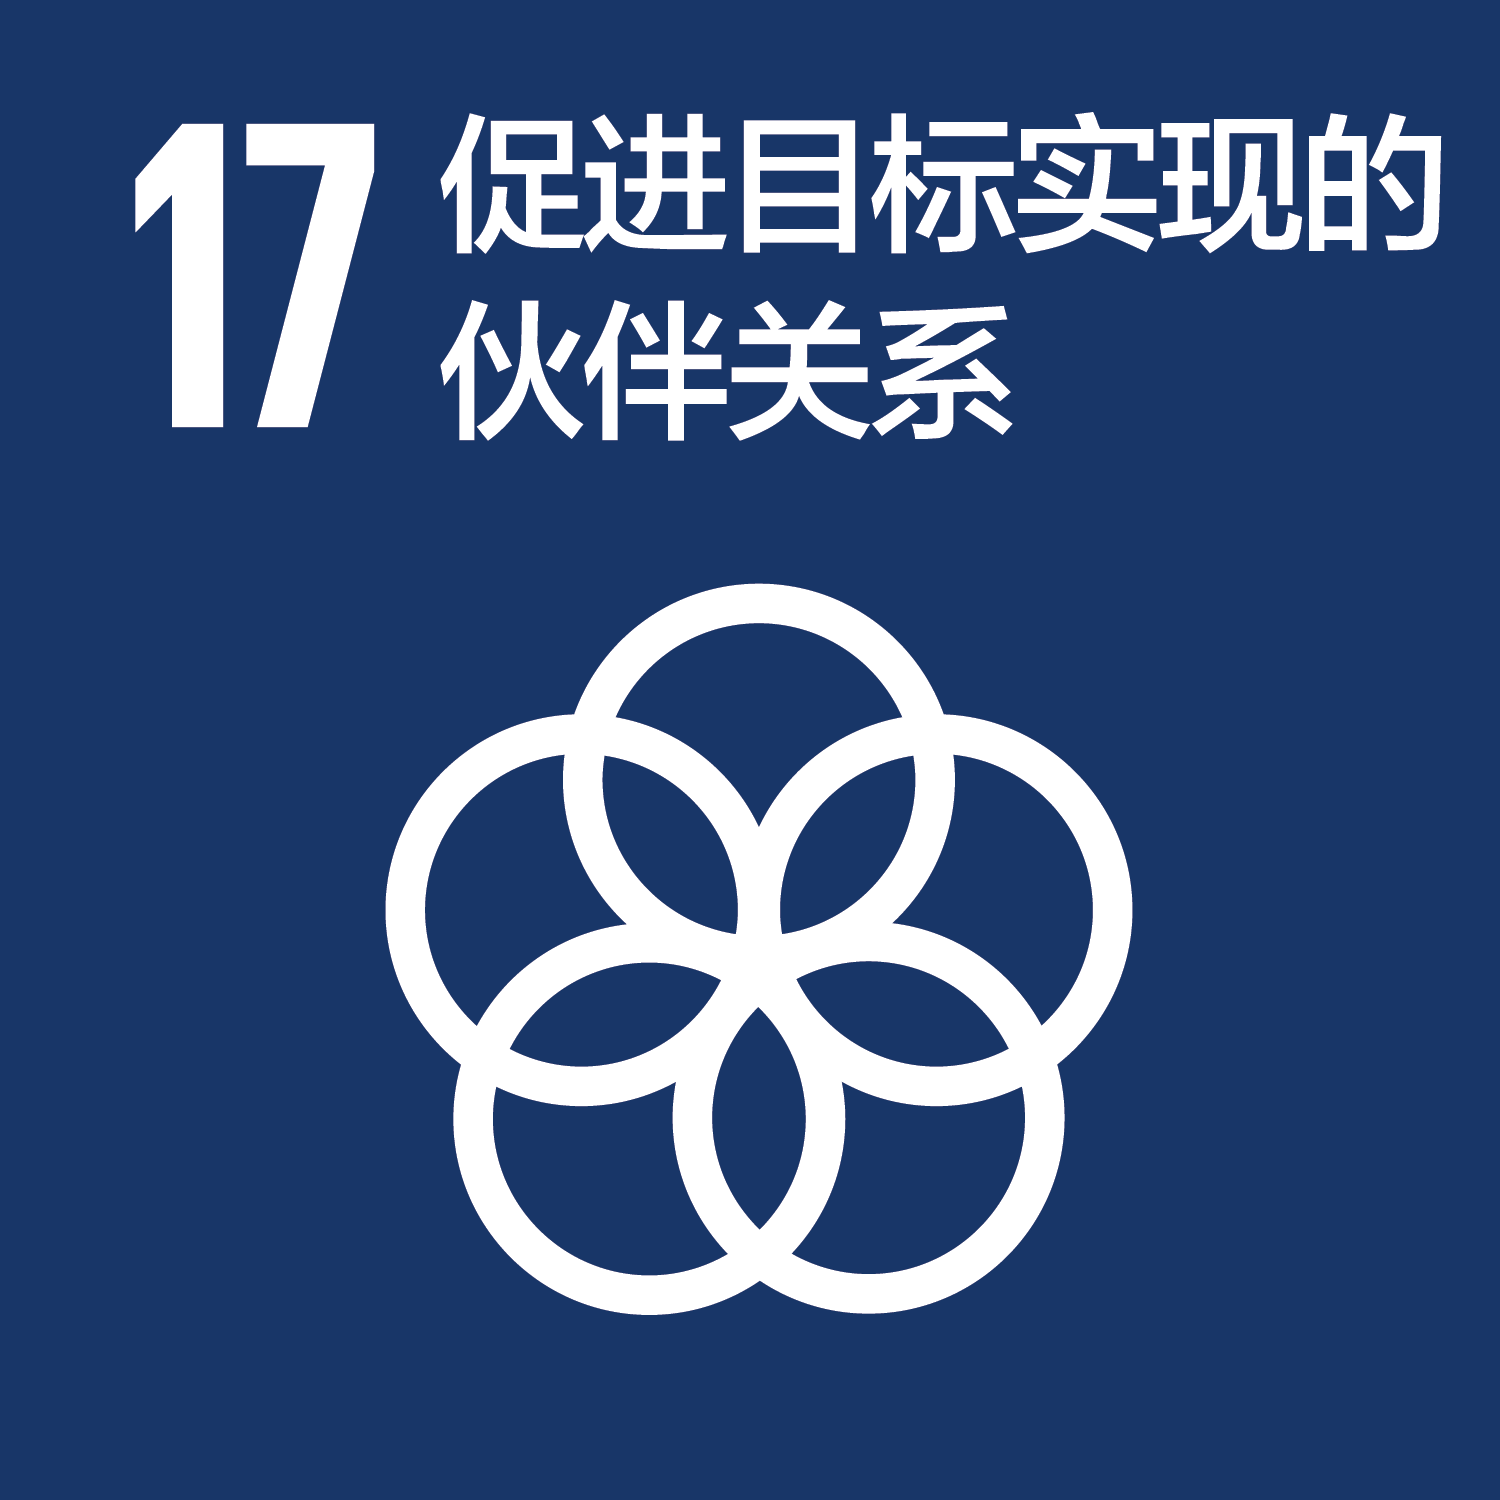 可持续发展目标-17促进目标实现的伙伴关系